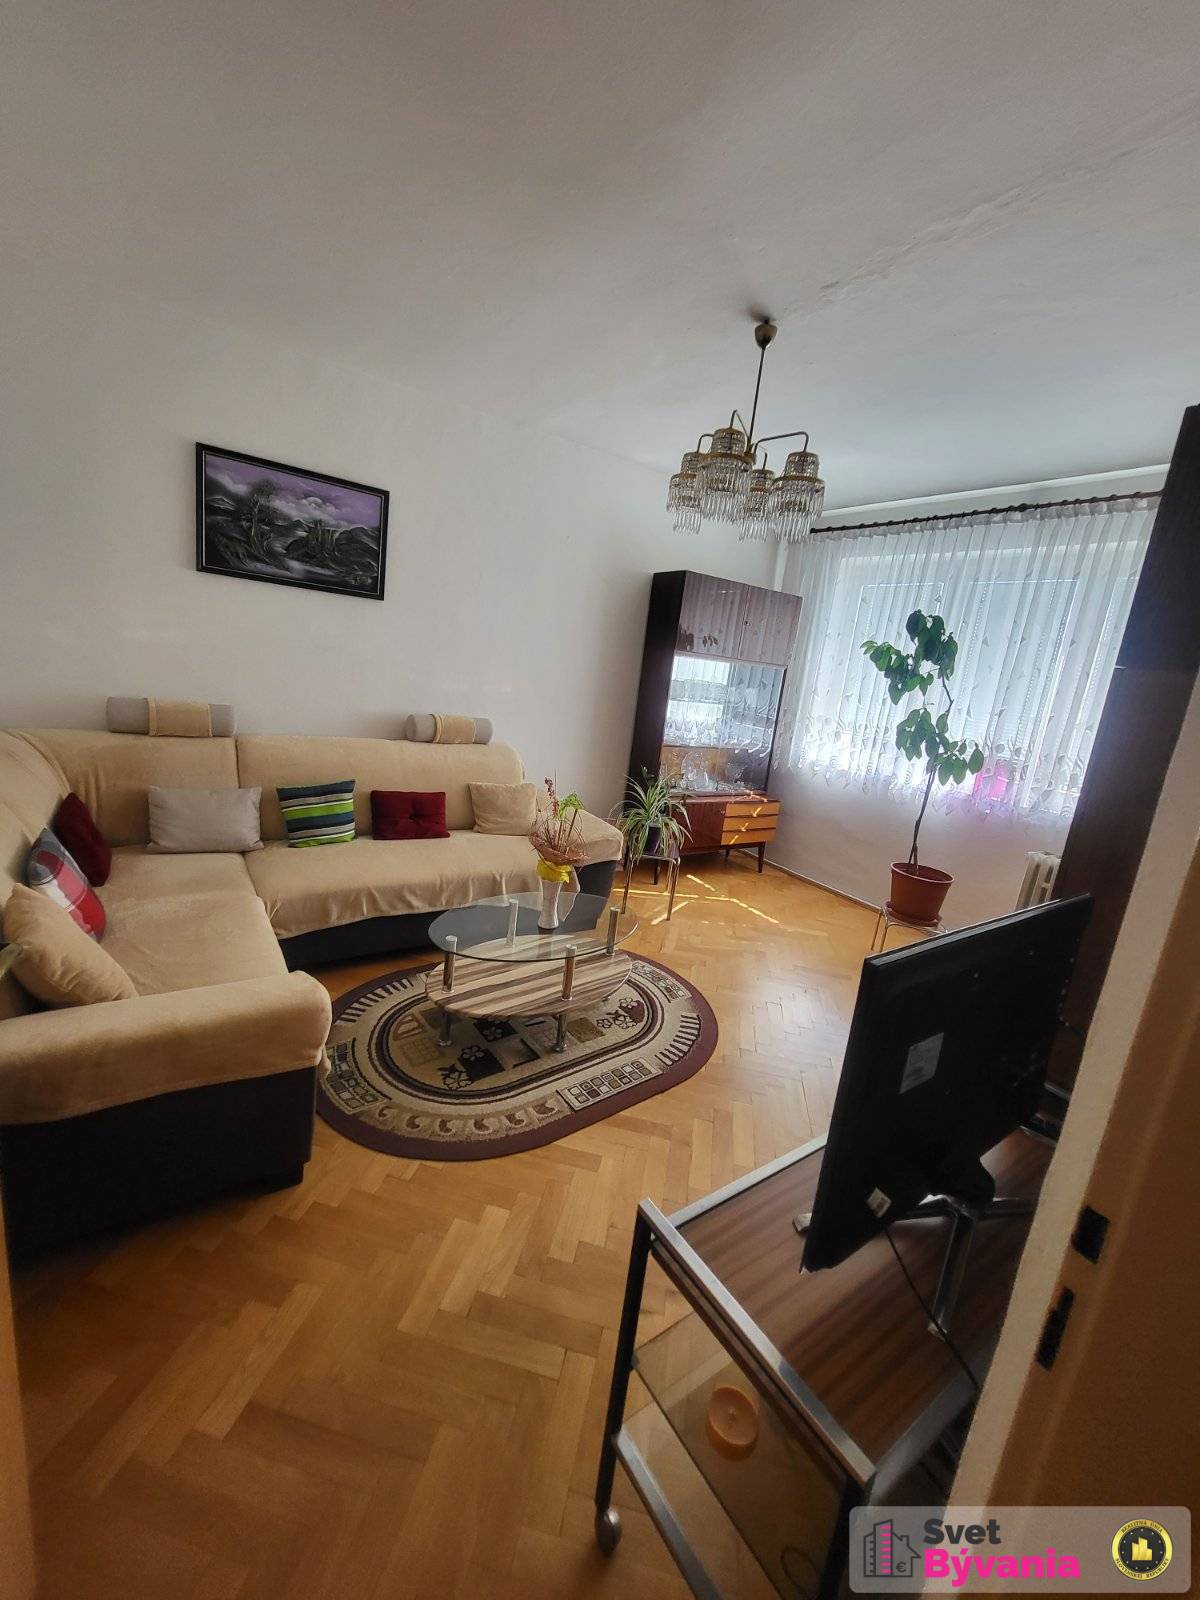 3-izbový byt na predaj v Košiciach - Terasa